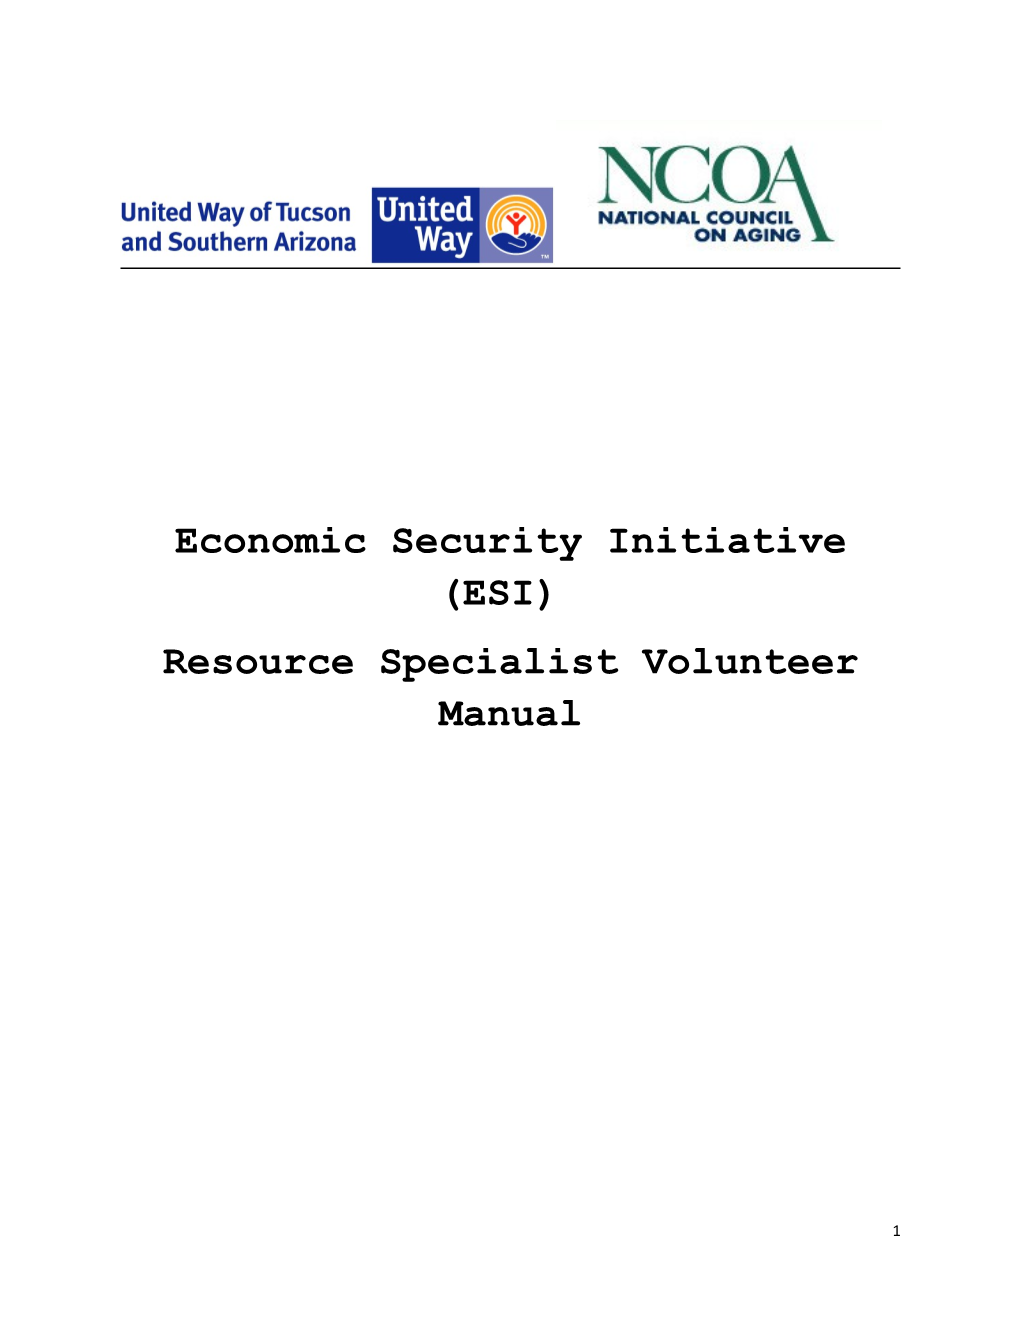 Economic Security Initiative (ESI)